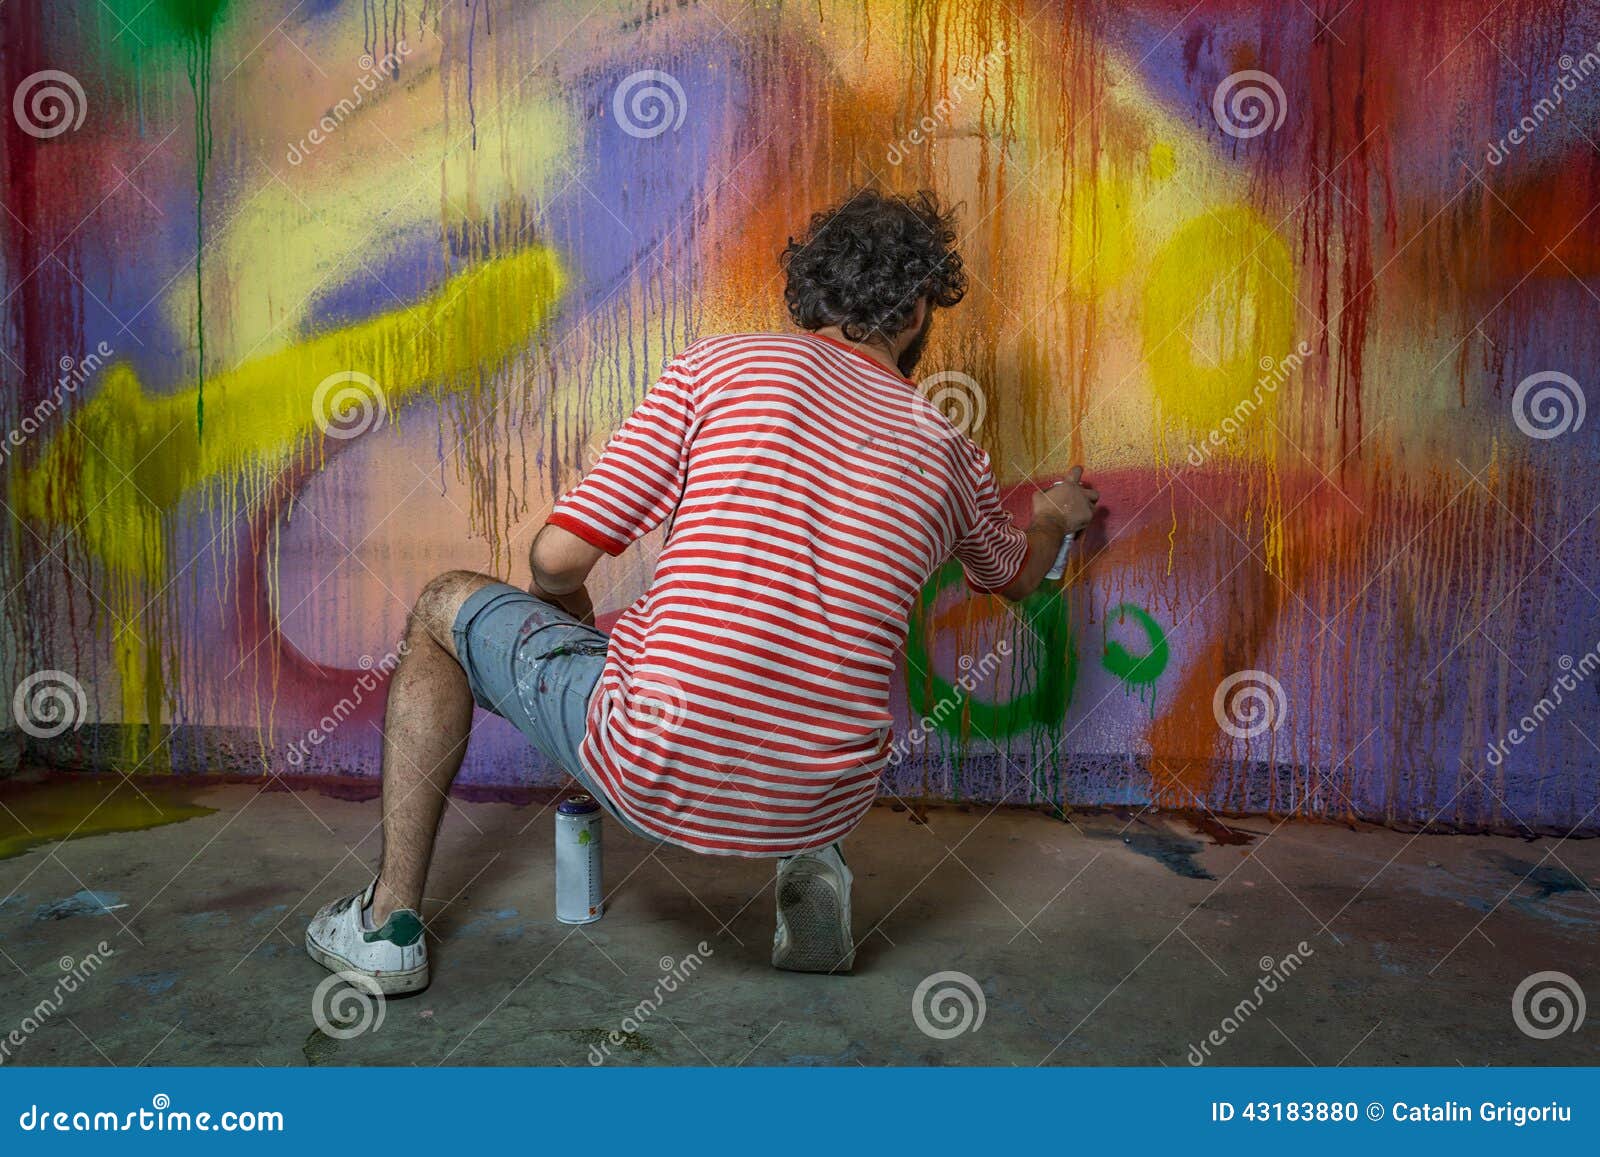 graffitti artist